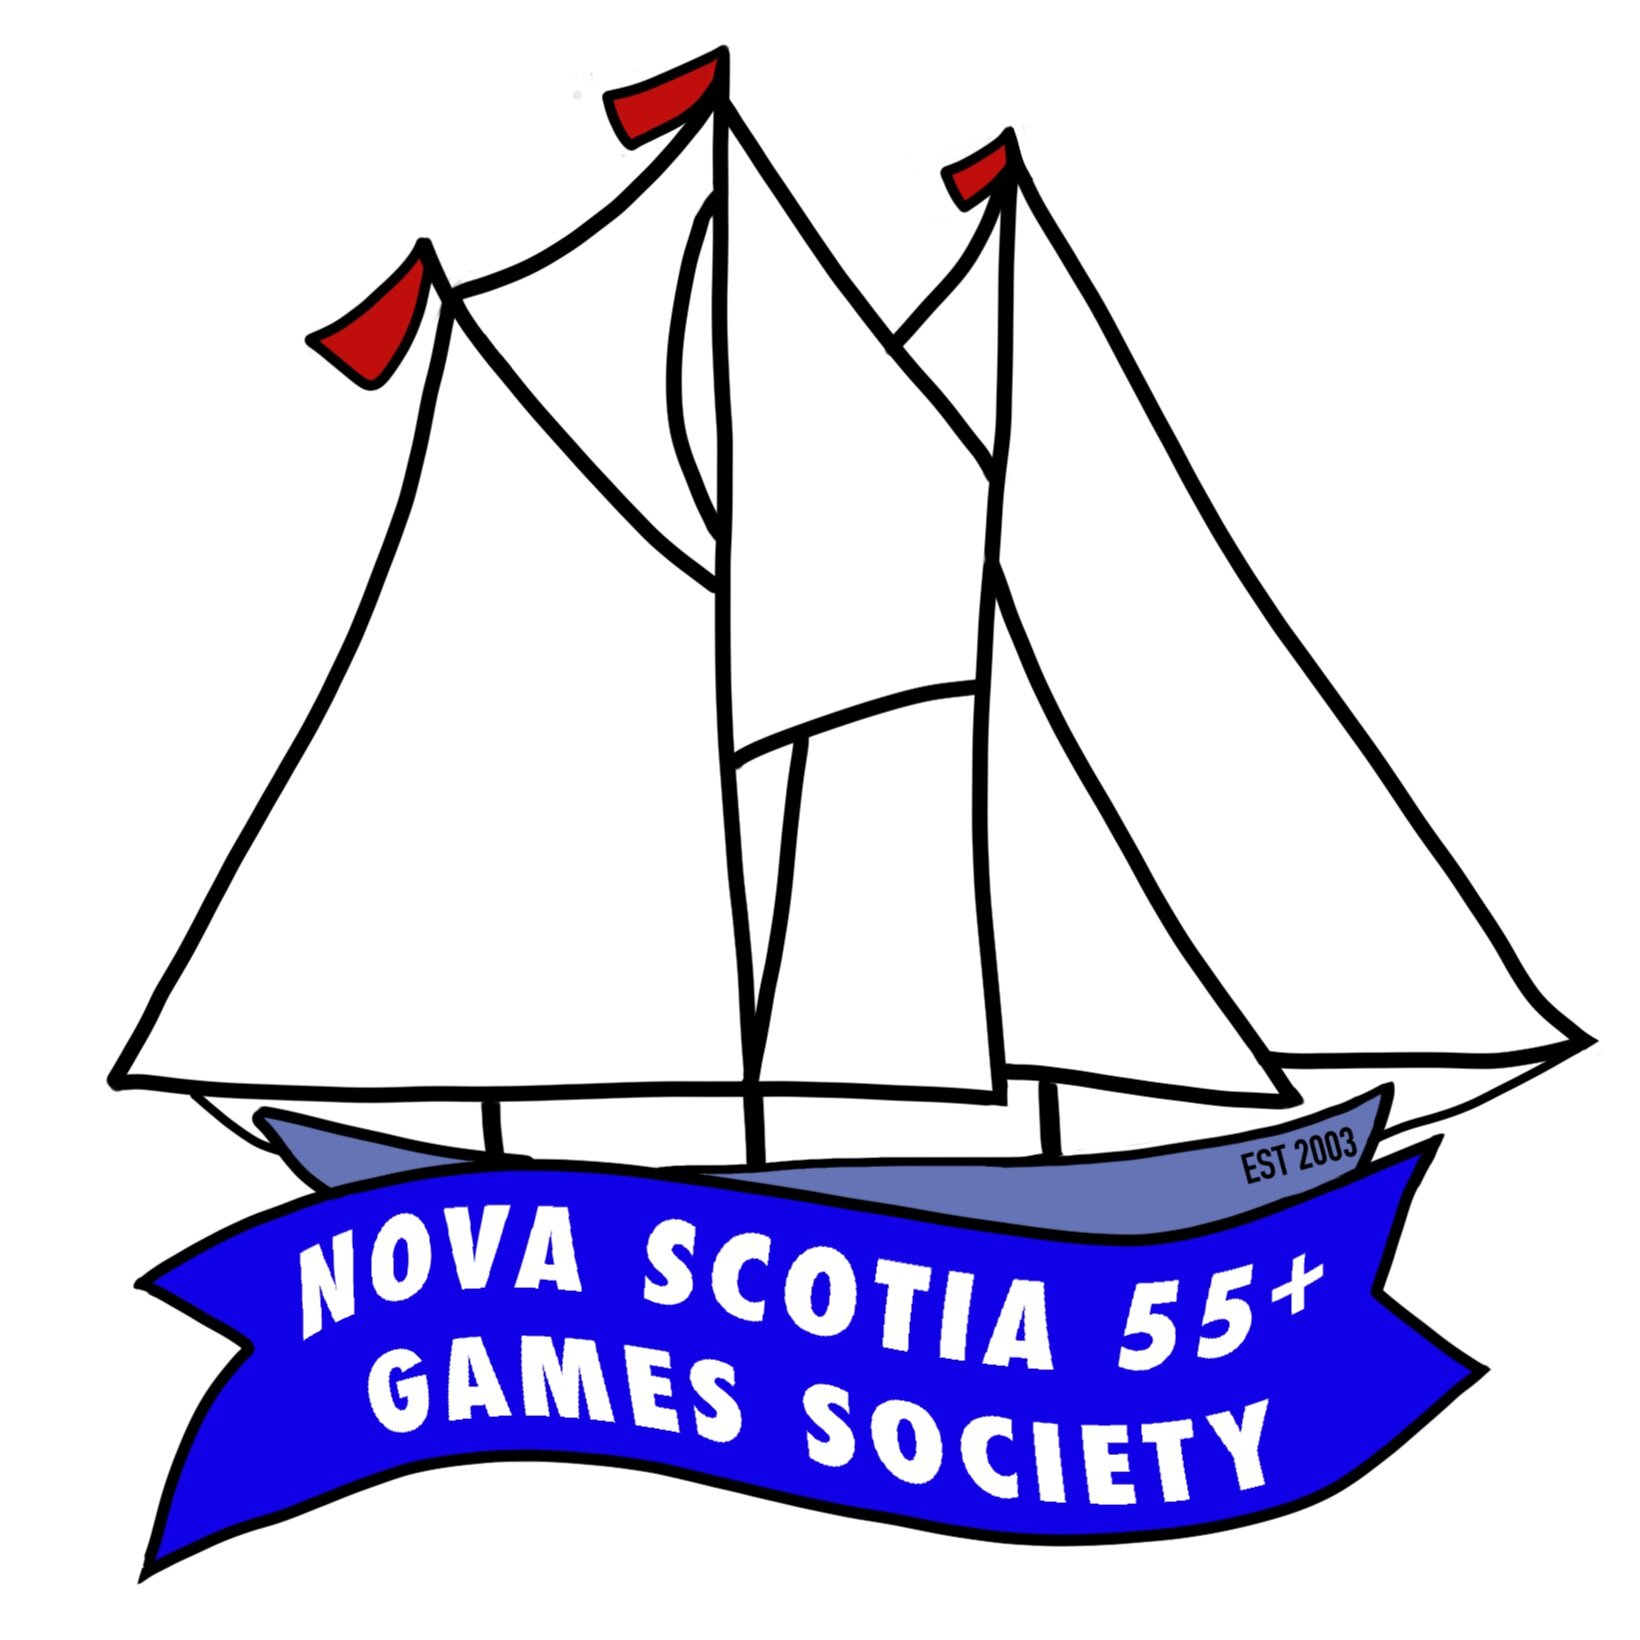 Nova Scotia 55+ Games